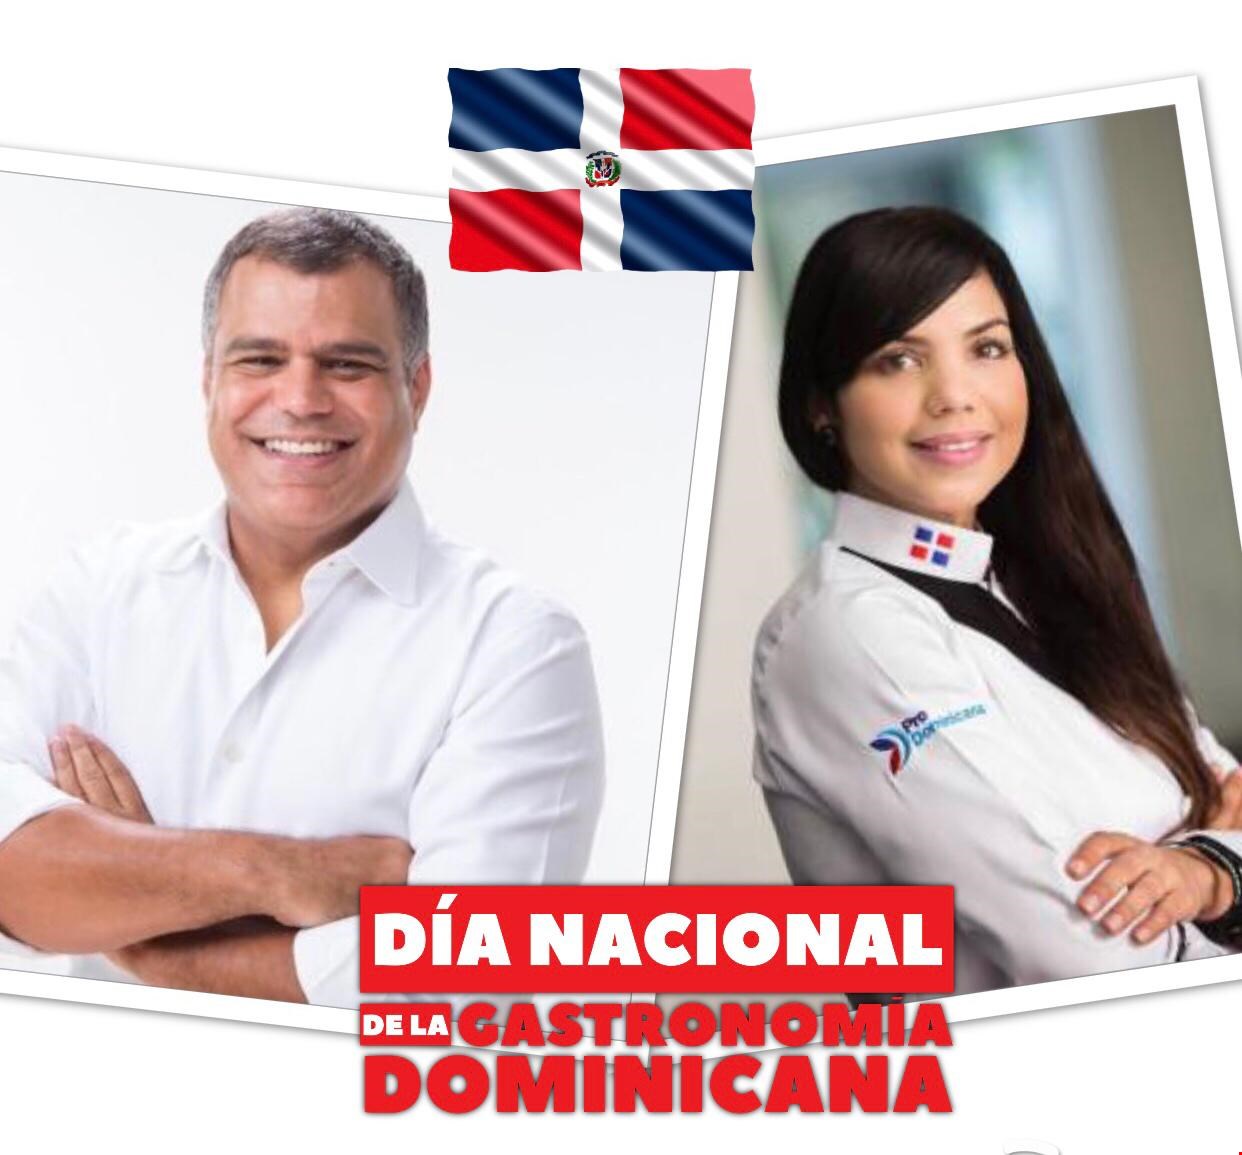 Por primera vez en la historia se celebra el Día Nacional de la Cocina y Gastronomía Dominicana